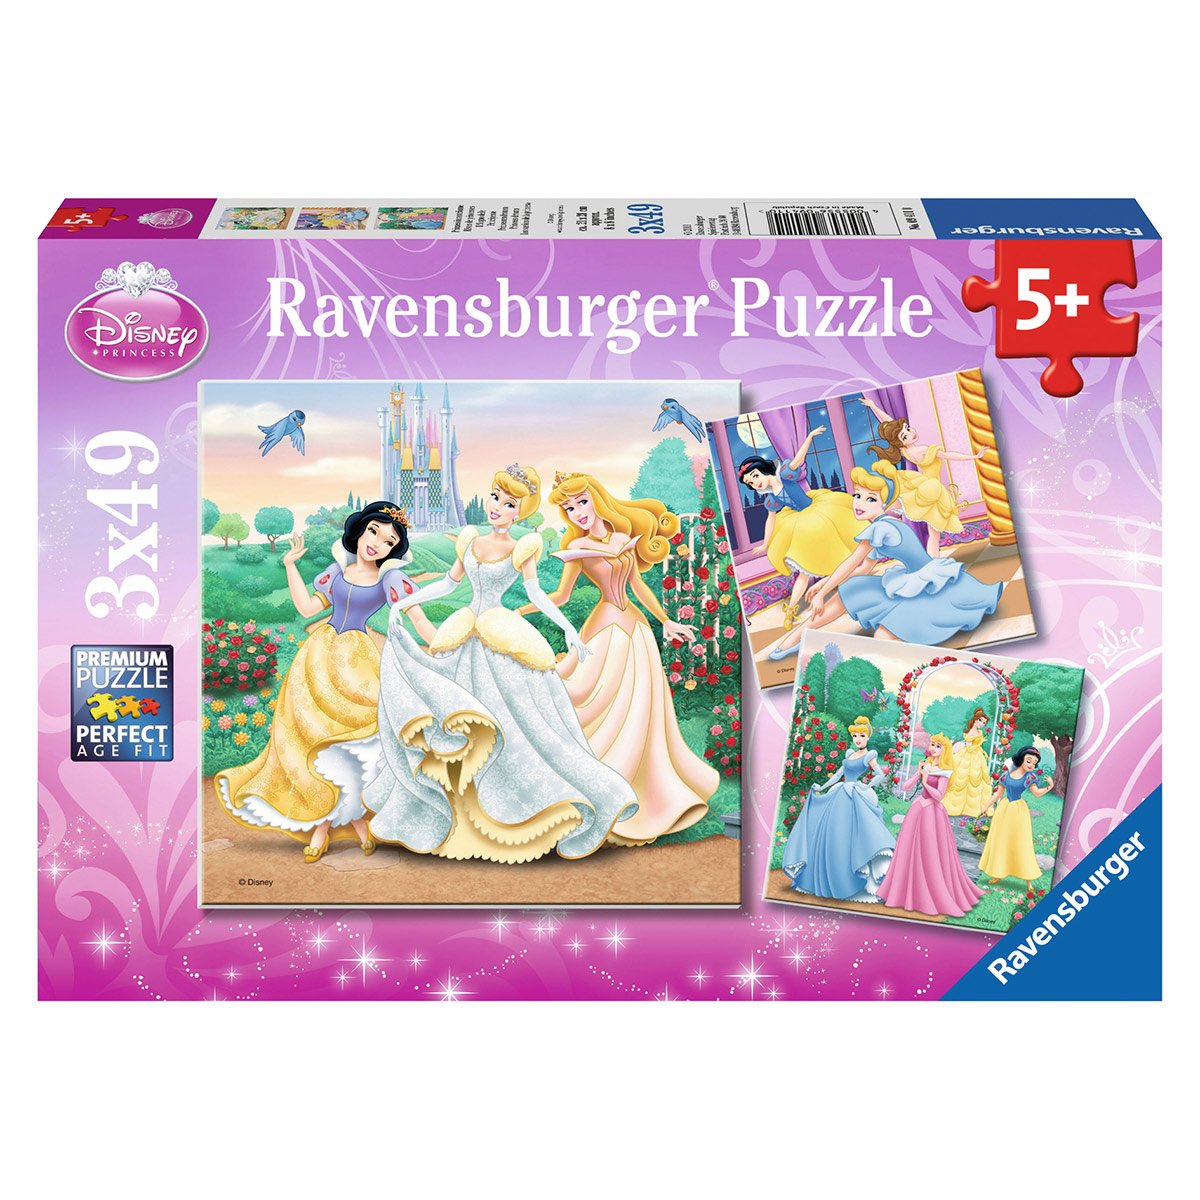 Princesses disney puzzle 150 pieces xxl - les reves peuvent devenir réalité  - ravensburger - puzzle enfant 150 pieces - des 7 ans - La Poste